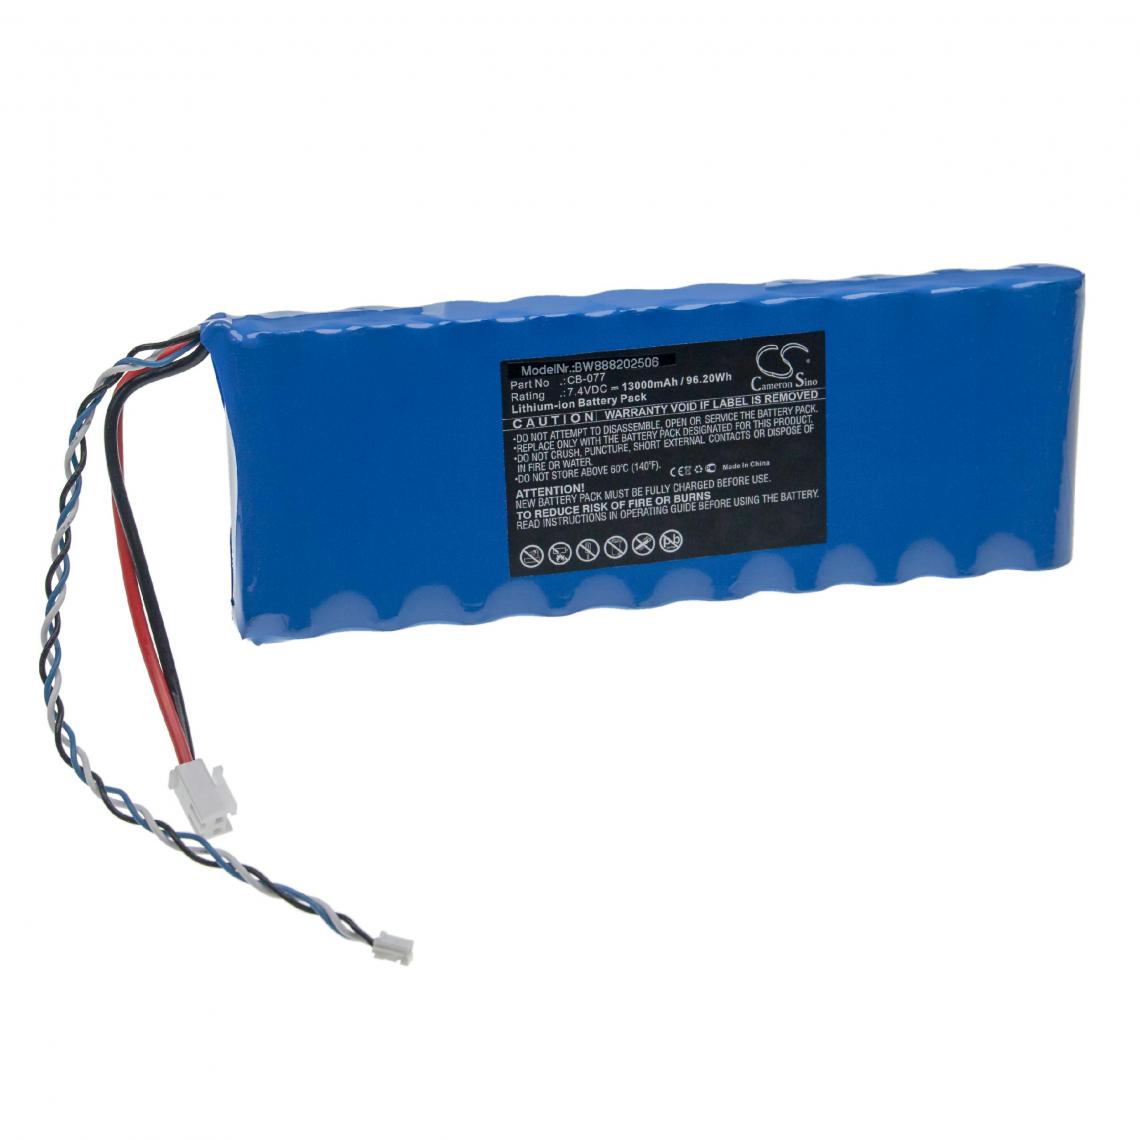 Vhbw - vhbw Batterie compatible avec Promax automatic TV satellite level meters outil de mesure (13000mAh, 7,4V, Li-ion) - Piles rechargeables